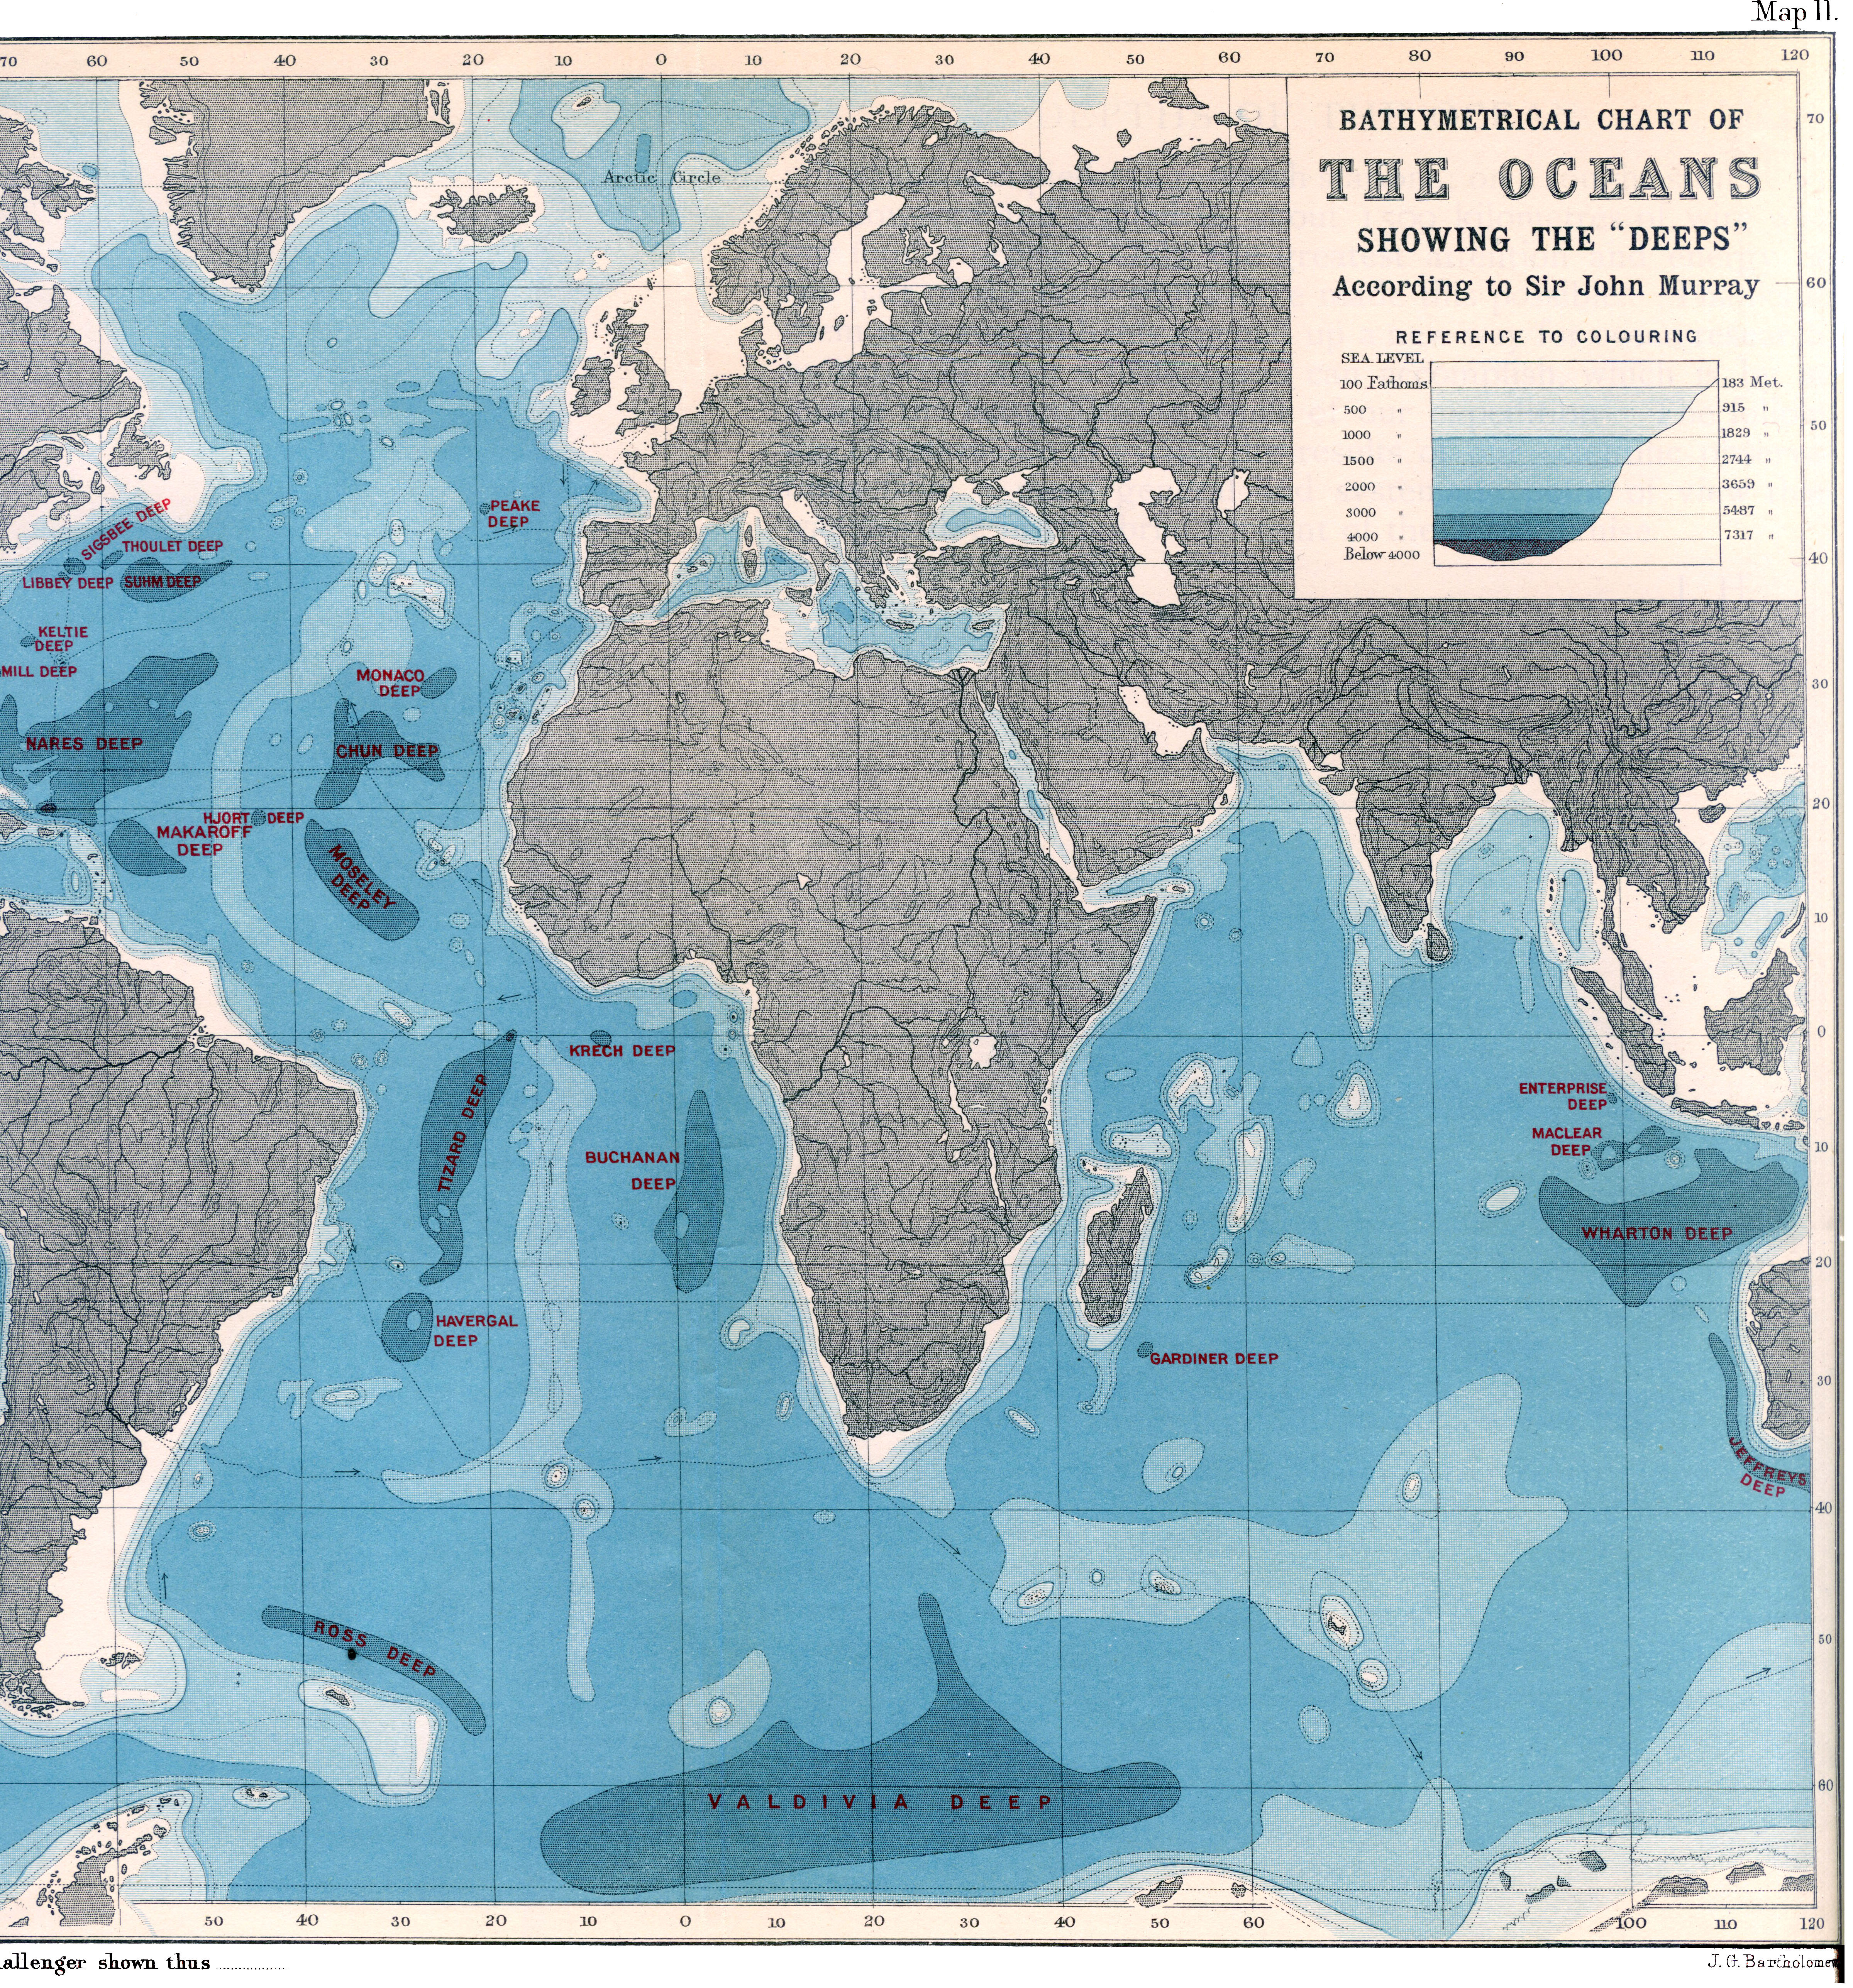 Map Atlantic Ocean Depth 